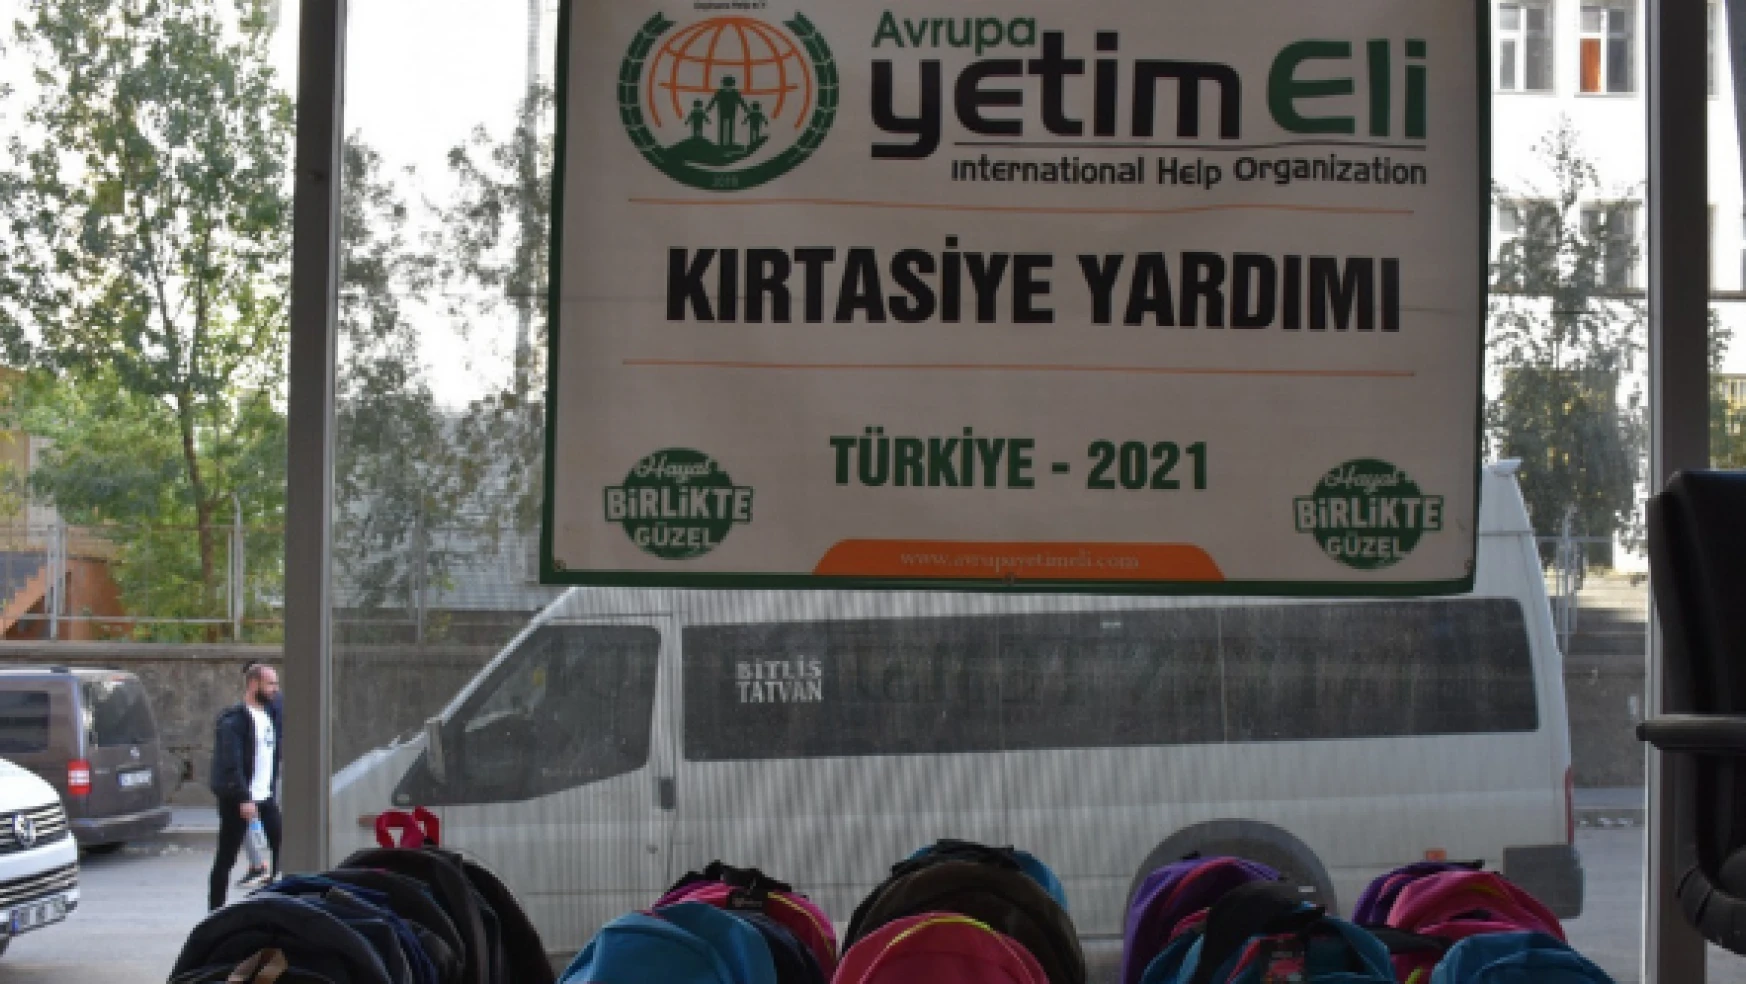 Avrupa Yetim Eli'nden Bitlisli çocuklara kırtasiye yardımı